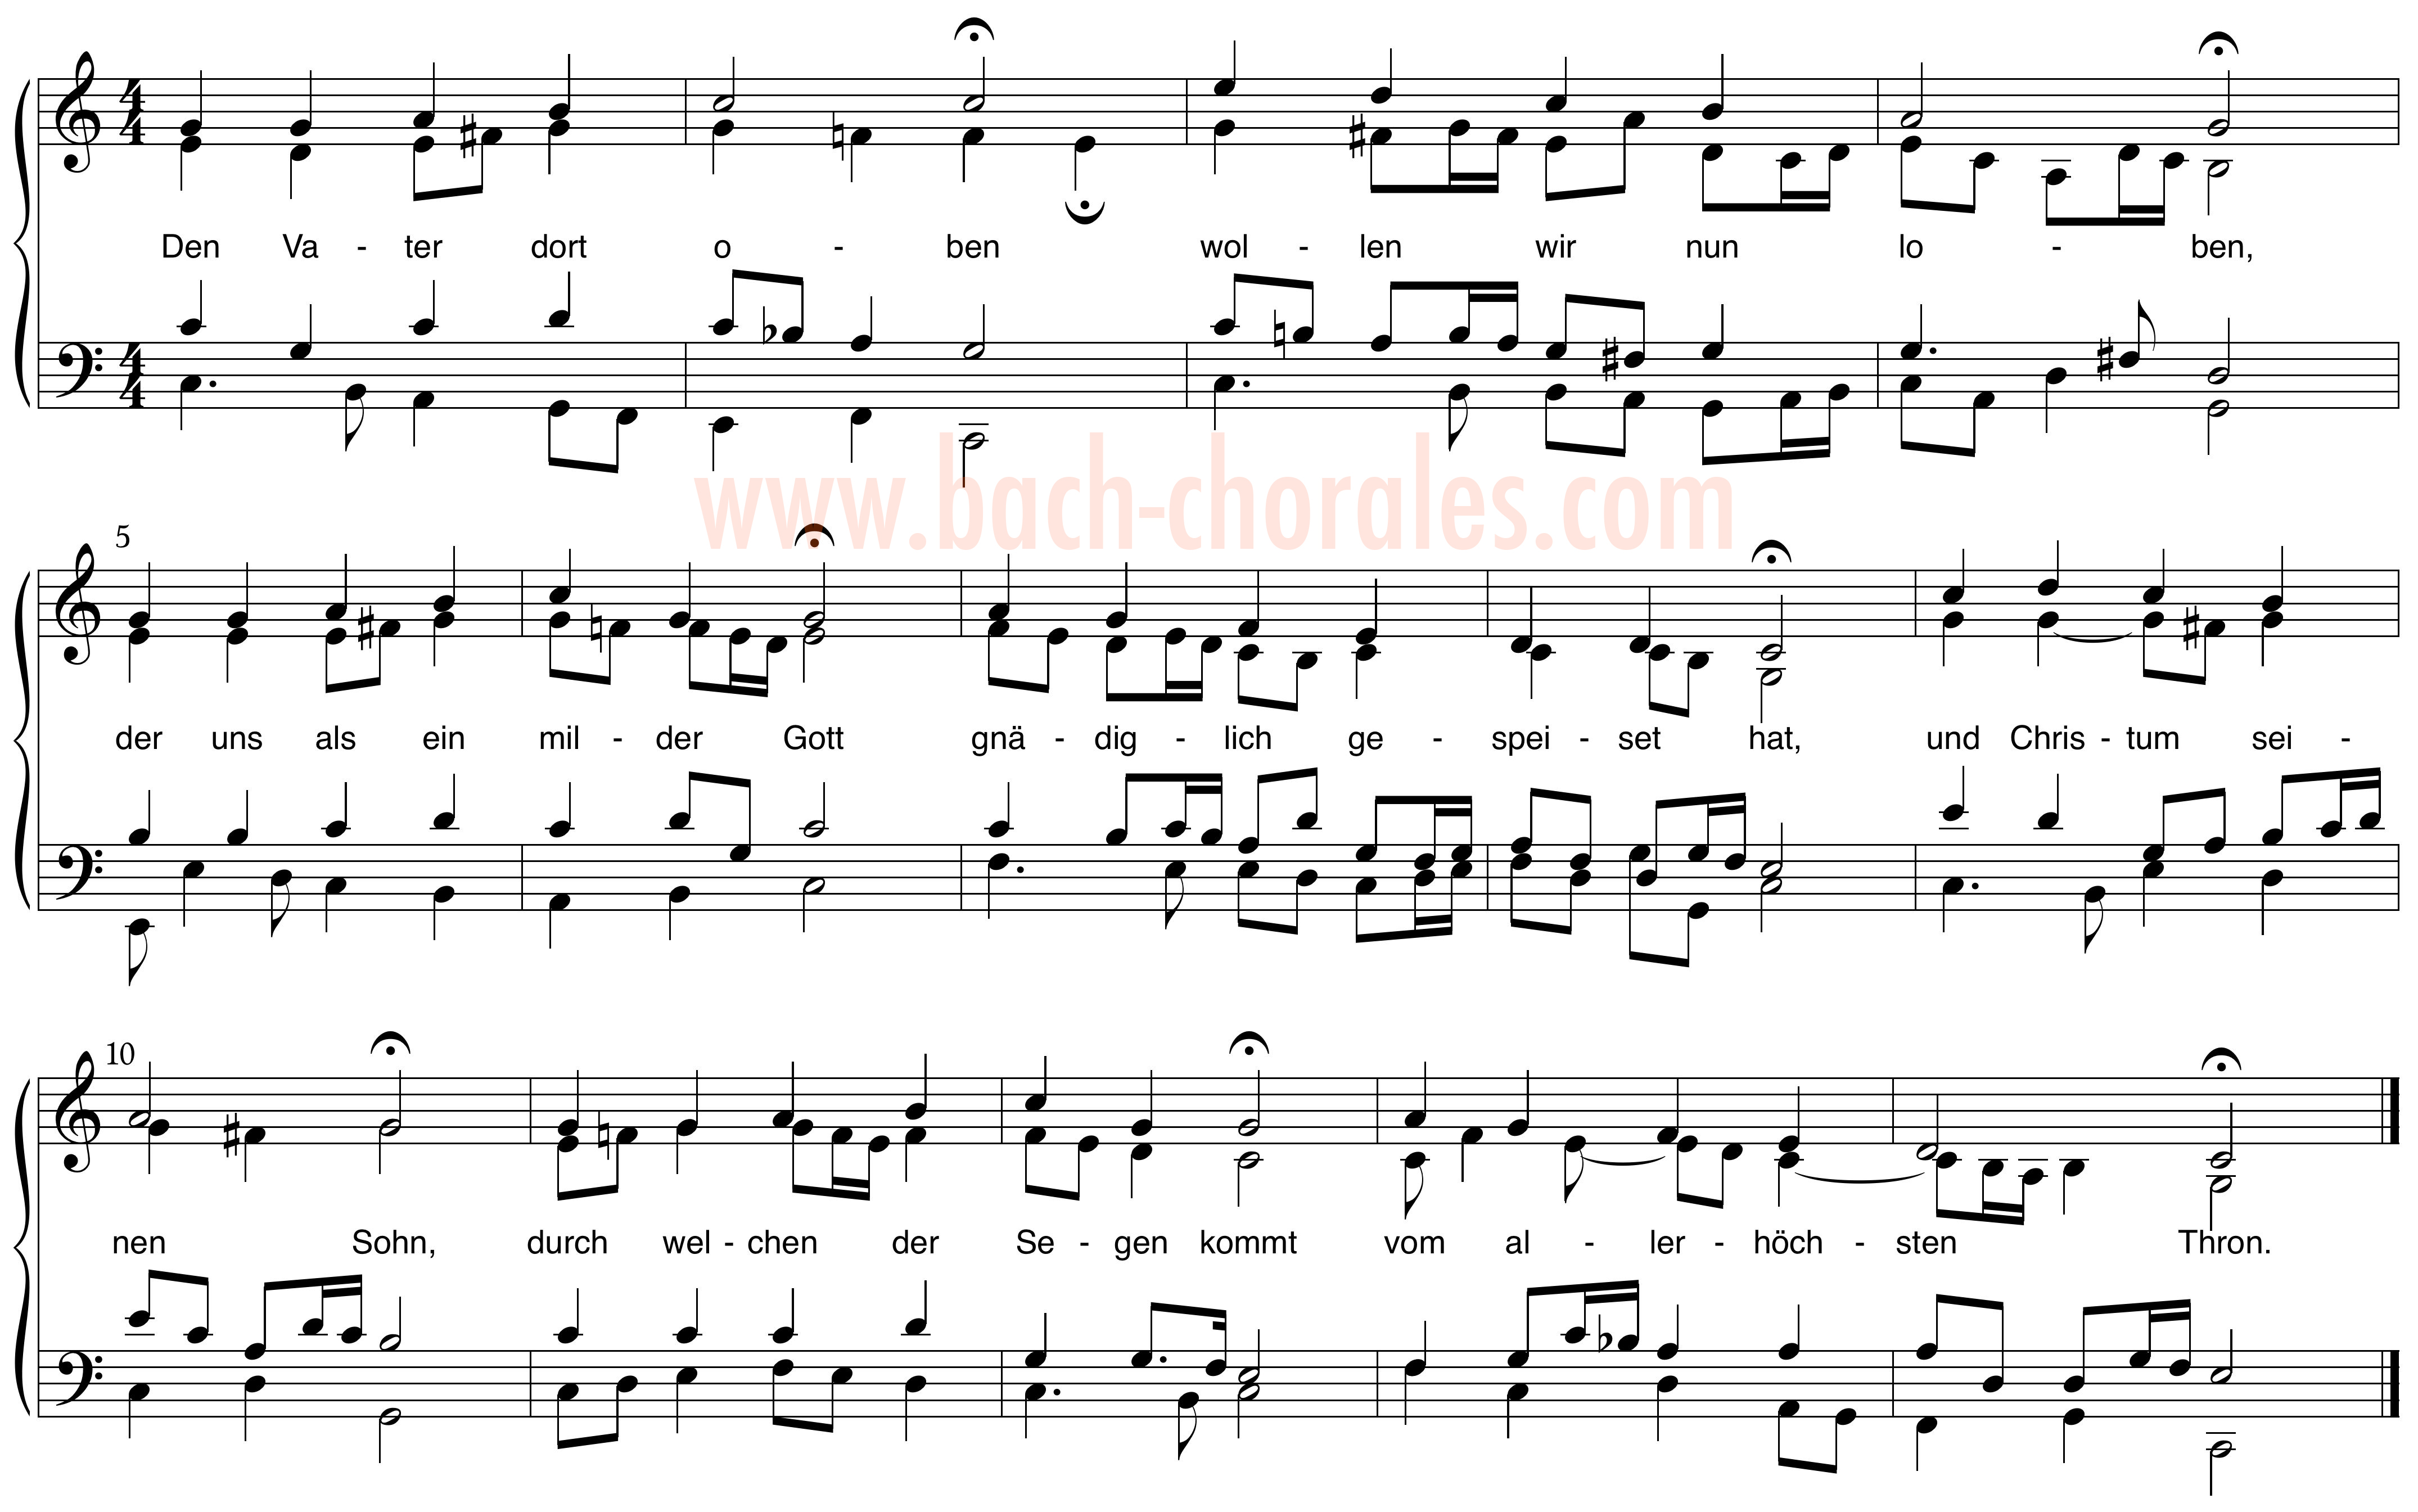 notenbeeld BWV 292 op https://www.bach-chorales.com/